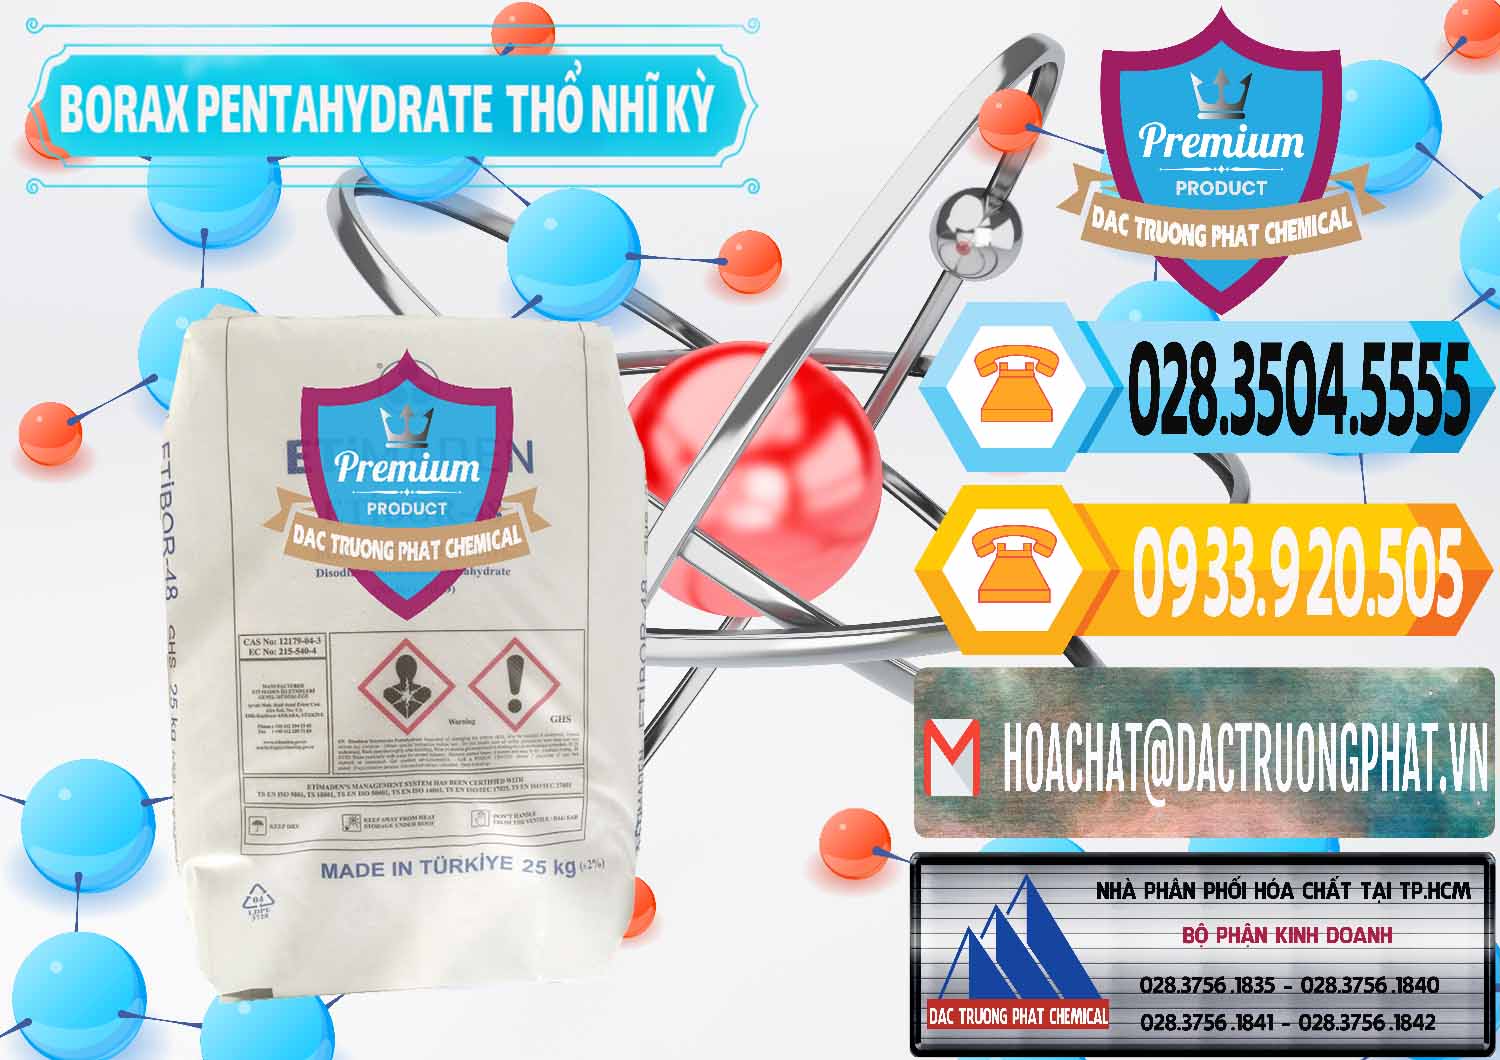 Cty chuyên kinh doanh và bán Borax Pentahydrate Thổ Nhĩ Kỳ Turkey - 0431 - Cty bán và cung cấp hóa chất tại TP.HCM - hoachattayrua.net